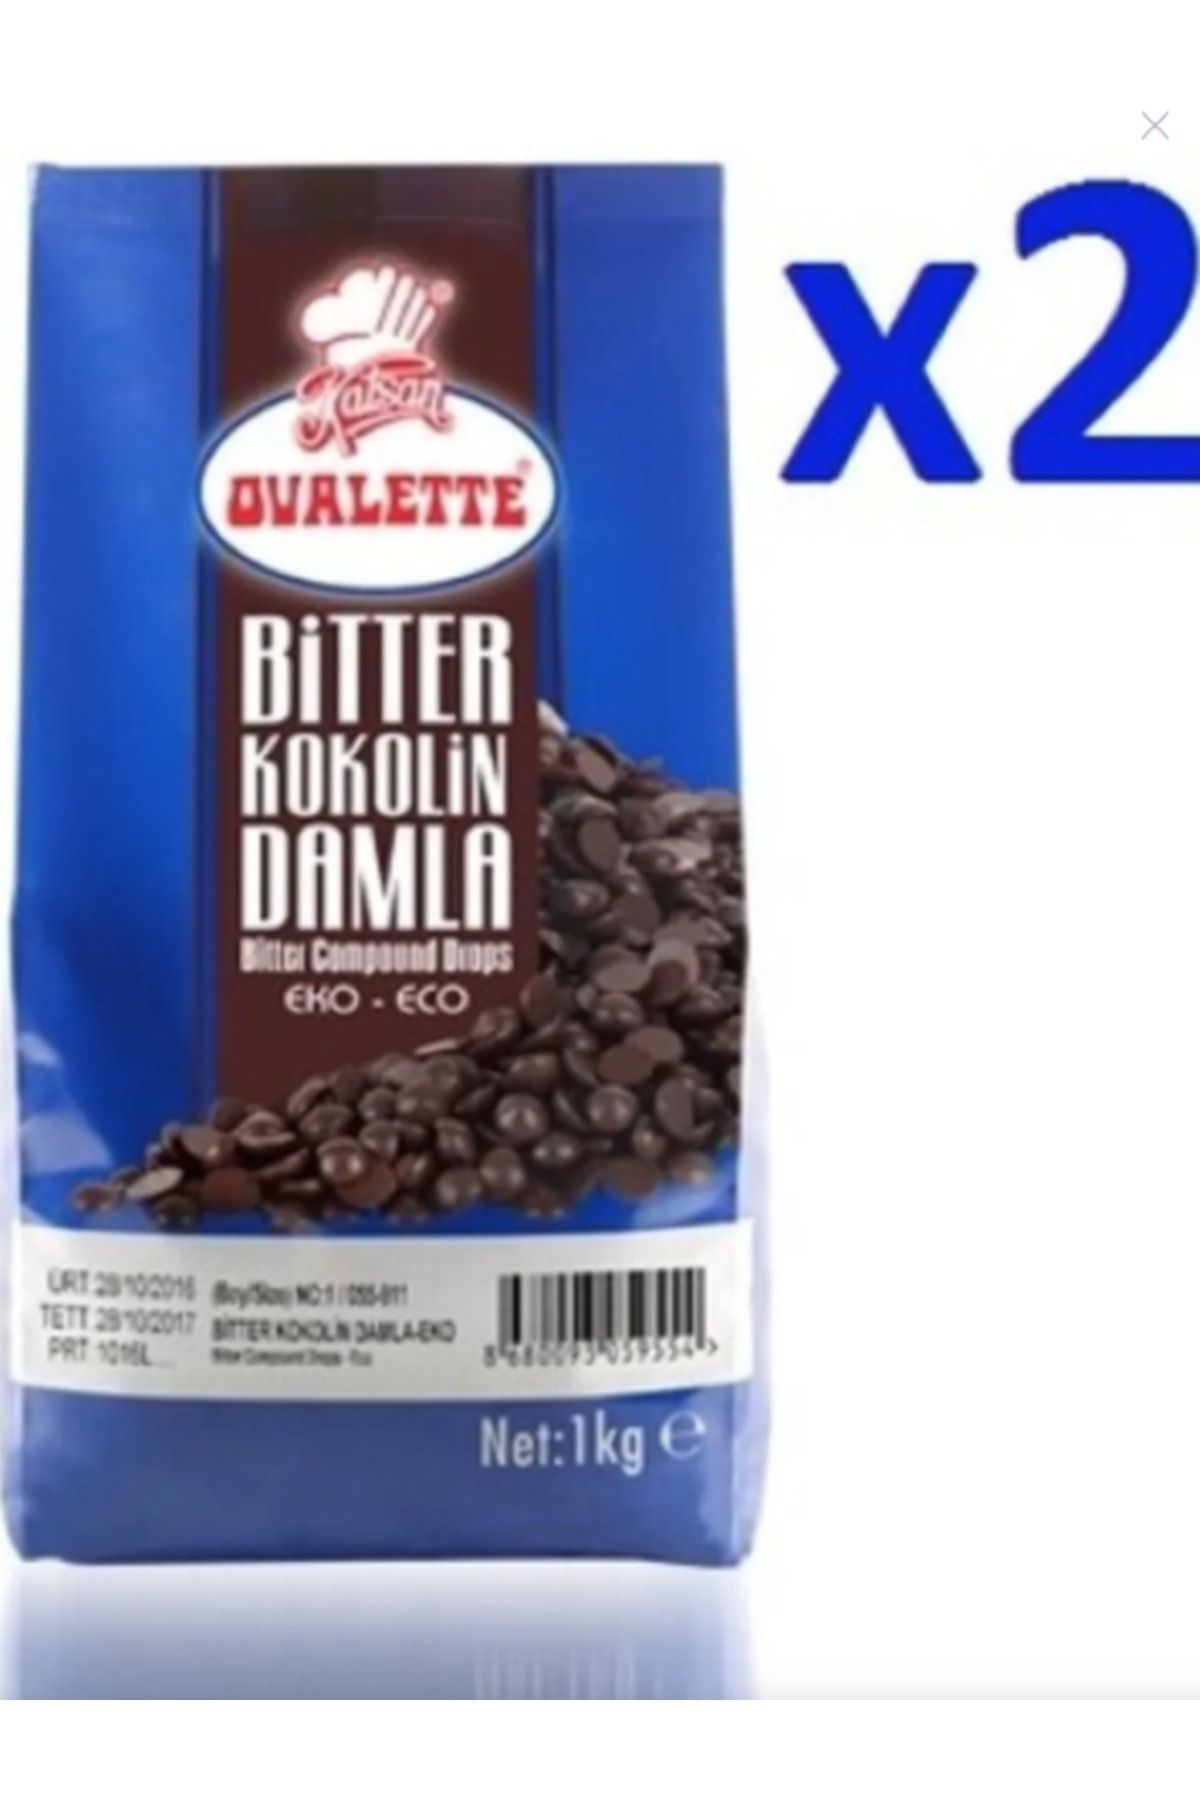 Katsan Ovalette Damla Çikolata Kokolin Bitter - Ovalette Katsan 2 Kg